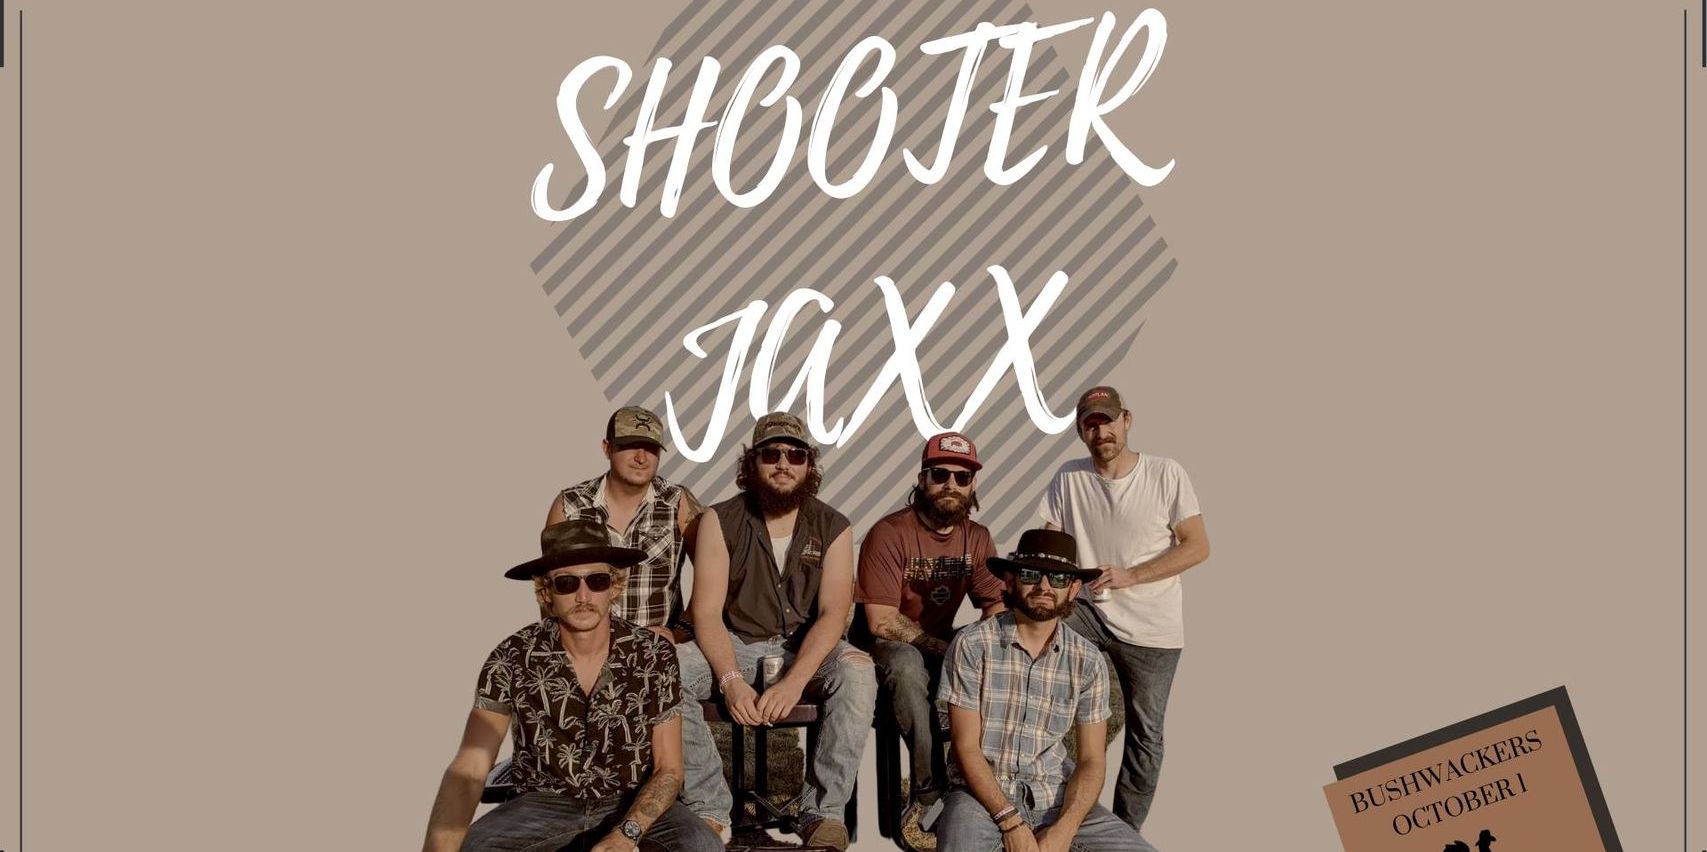 Bushwackers Live: Shooter Jaxx promotional image